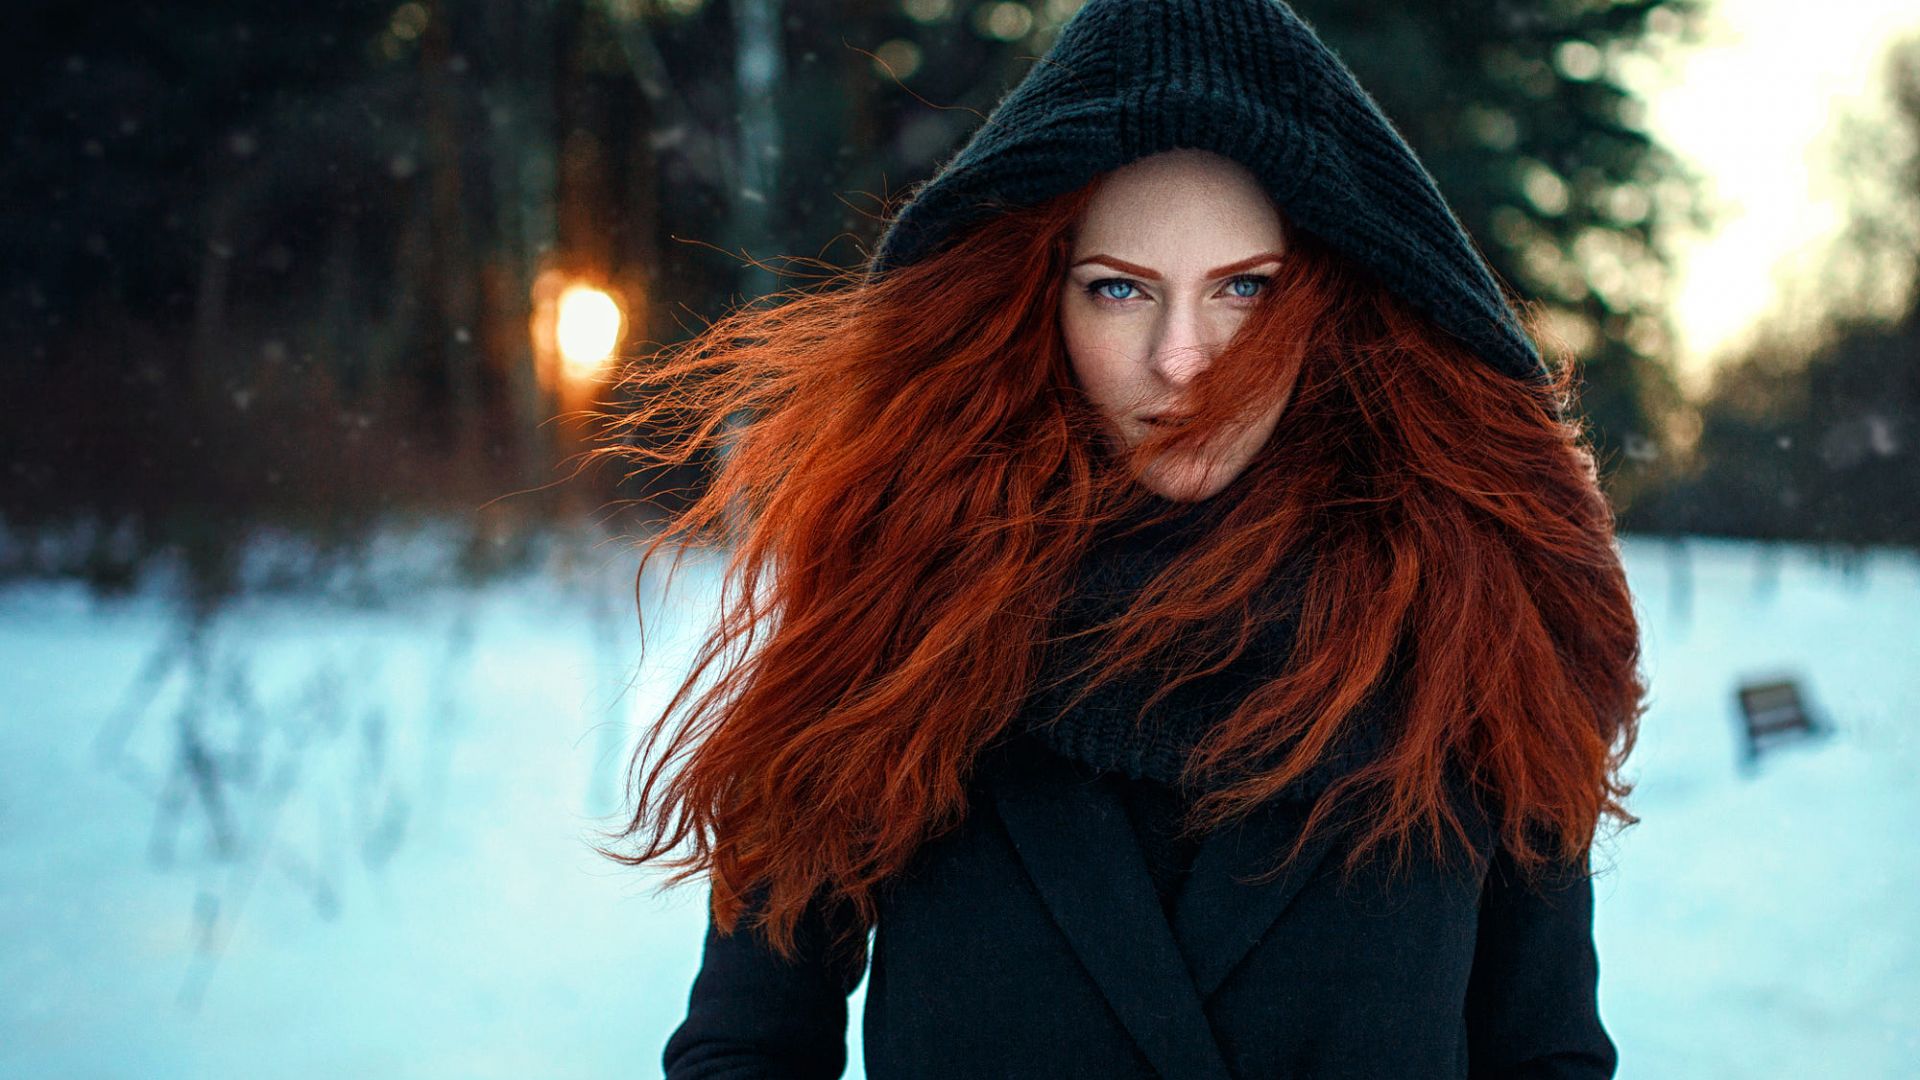 Wallpaper Red head, girl model, winter, outdoor